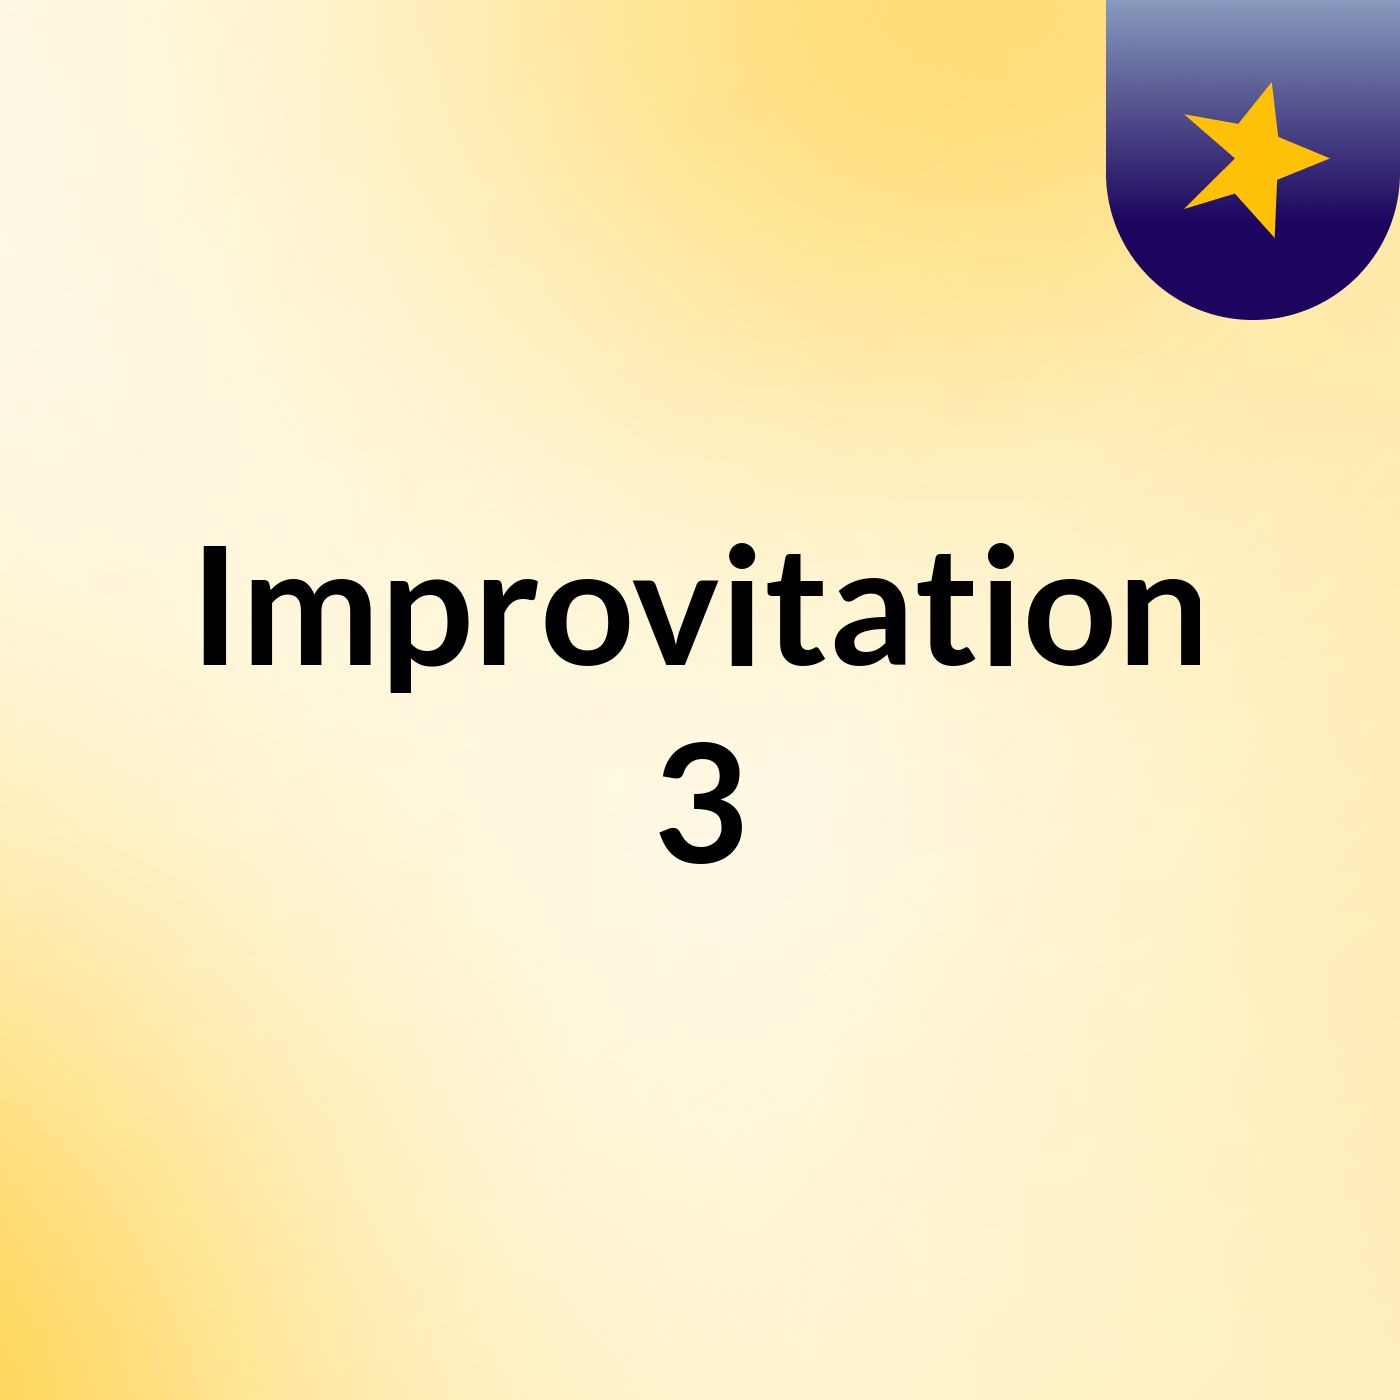 Episodio 4 - Improvitation 3